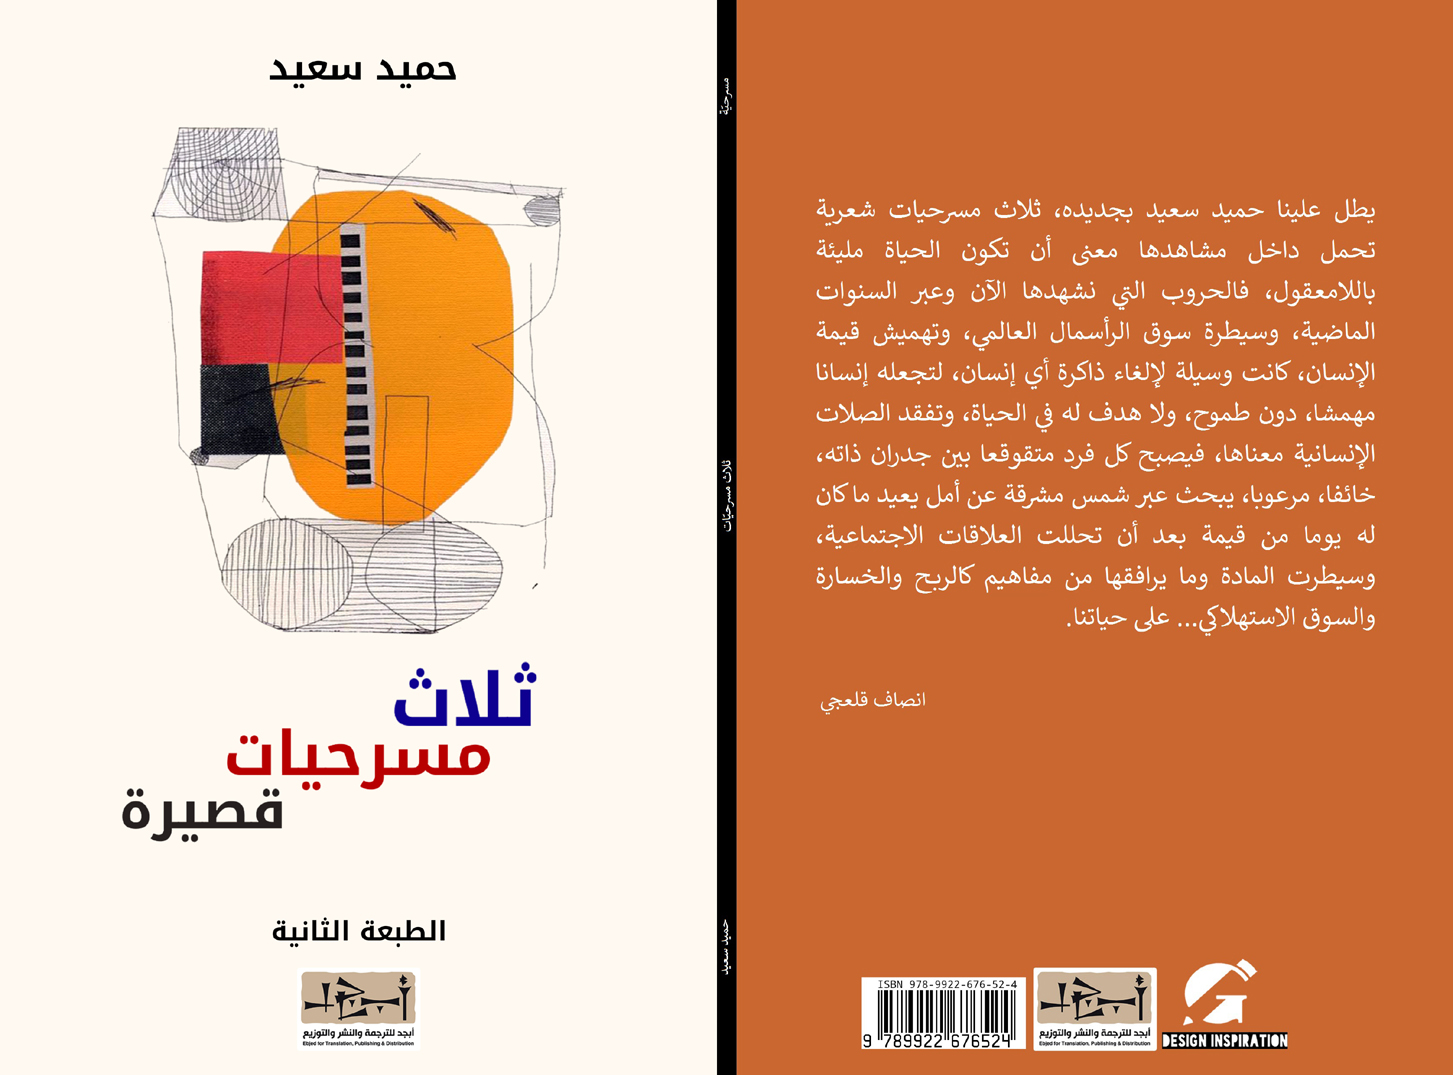 اسم الكتاب: ثلاث مسرحيات قصيرة تأليف: حميد سعيد 